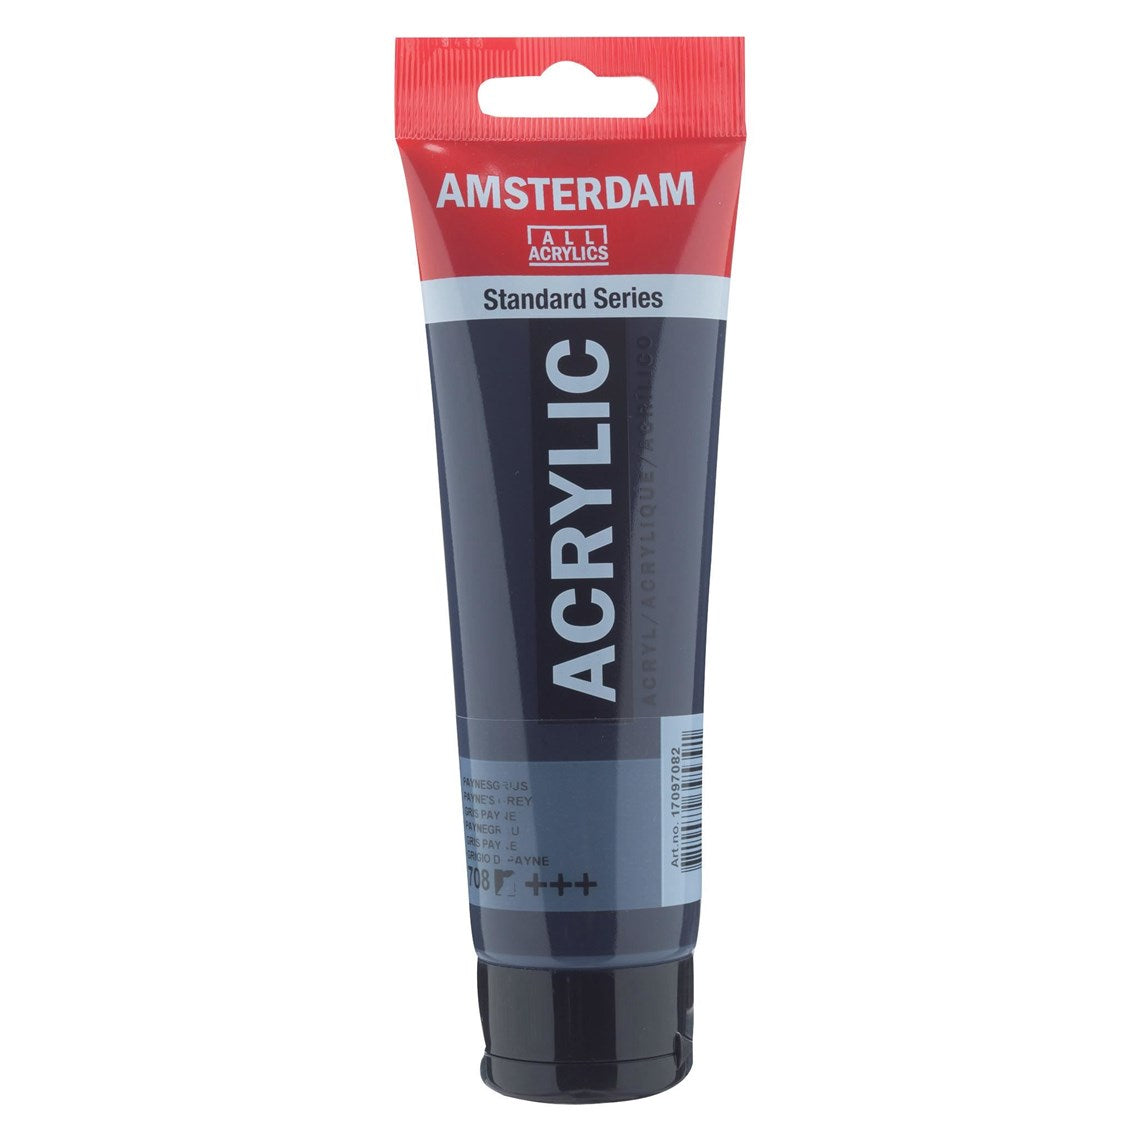 708 Paynenharmaa Amsterdam Akryylimaali 120 ml  Royal Talens Akryylimaalit 120 ml tuubissa. Amsterdam akryylimaali on hintatietoisen harrastajan valinta. Maalin pohjana on kestävä 100 % akryylihartsi ja maali on saatavilla useissa värisävyissä. Amsterdam akryylimaali kuivuu nopeasti ja on myrkytöntä. Vesiliukoinen ennen kuivumista. Kuivuttuaan vedenkestävä.